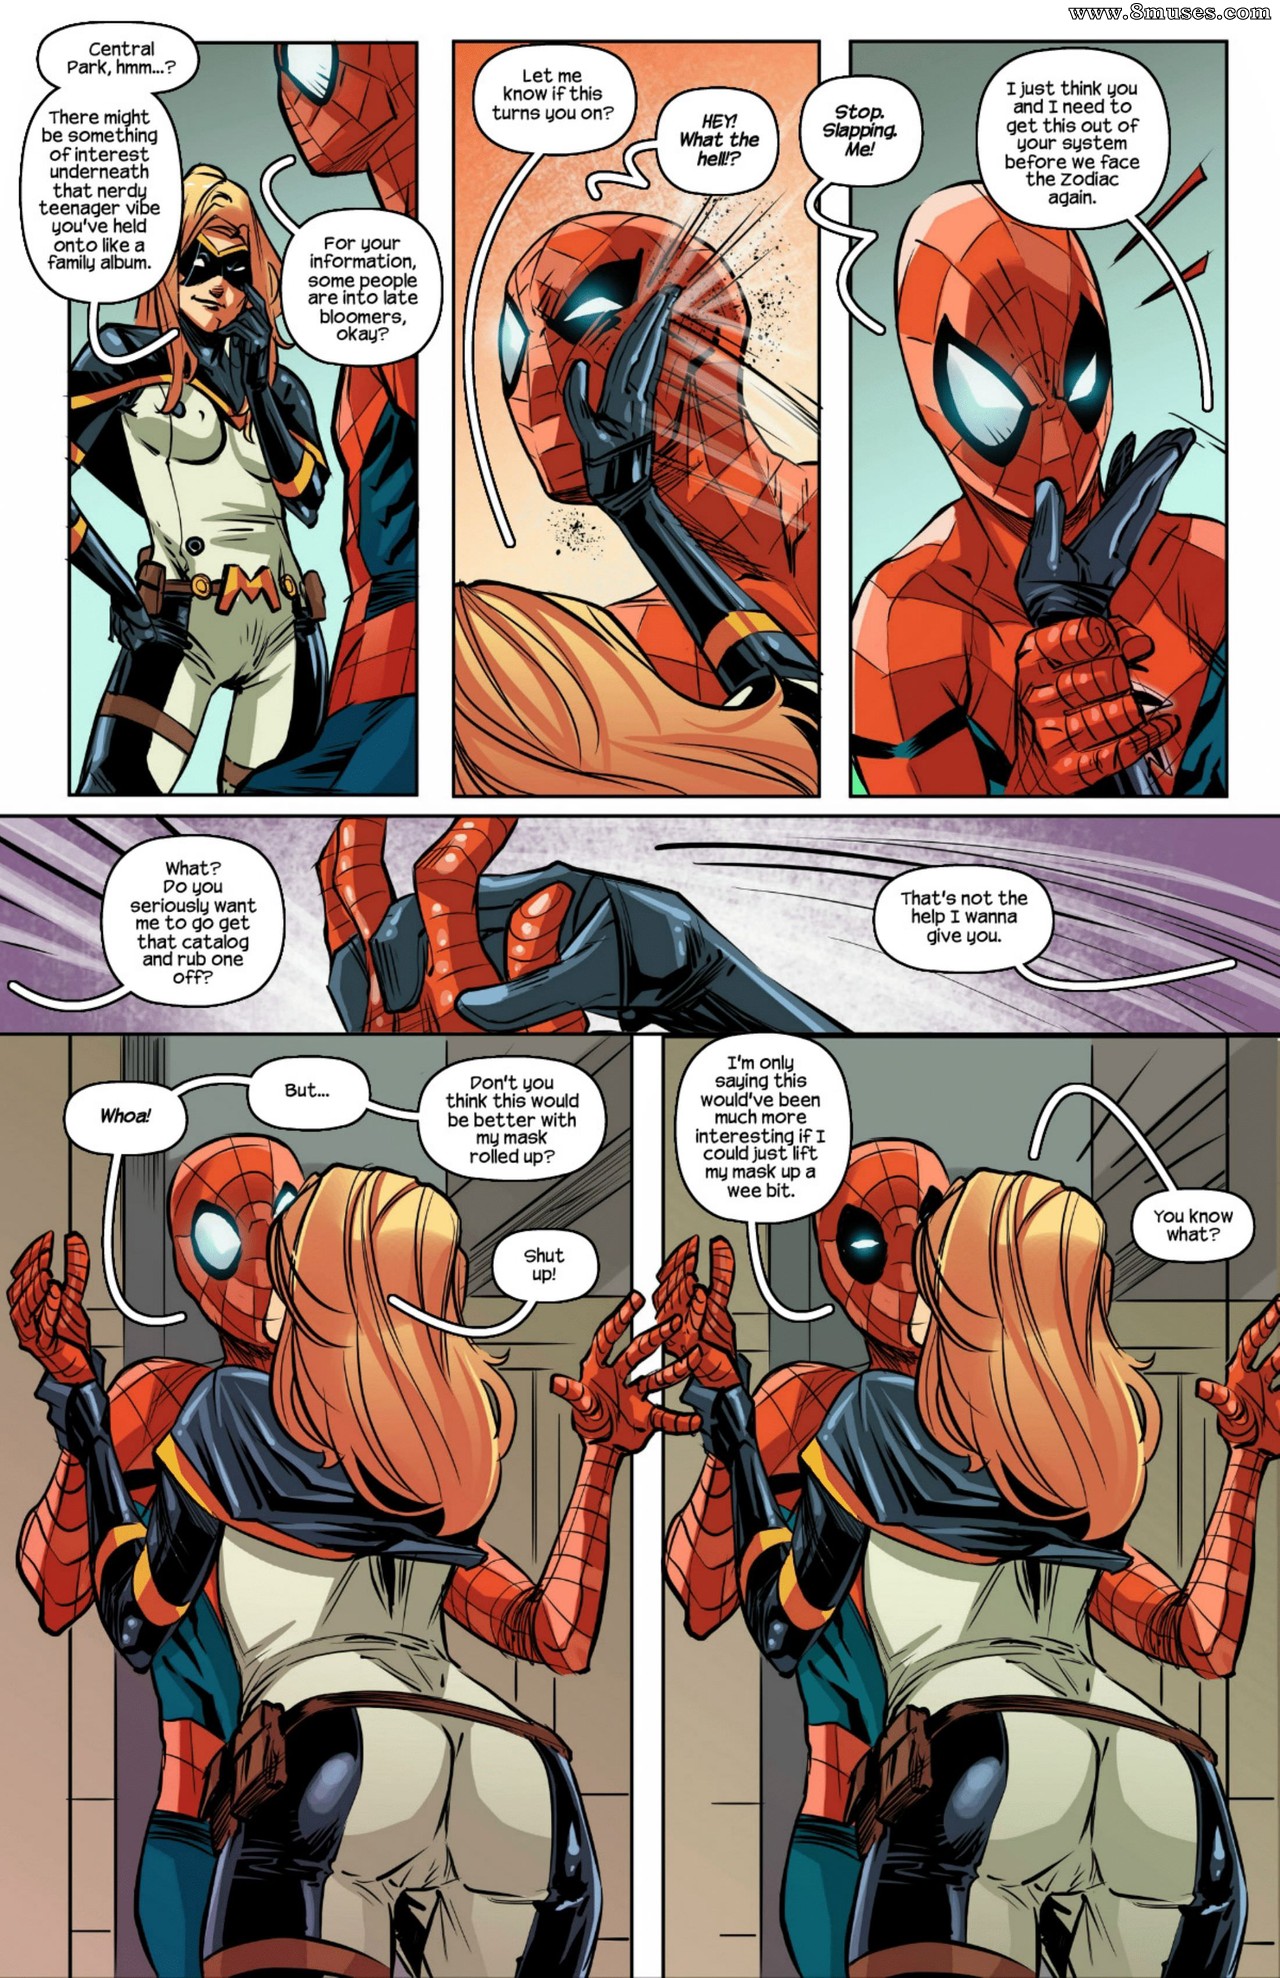 Spiderman victimizing the villain Issue 1 - 8muses Comics - Sex Comics and  Porn Cartoons